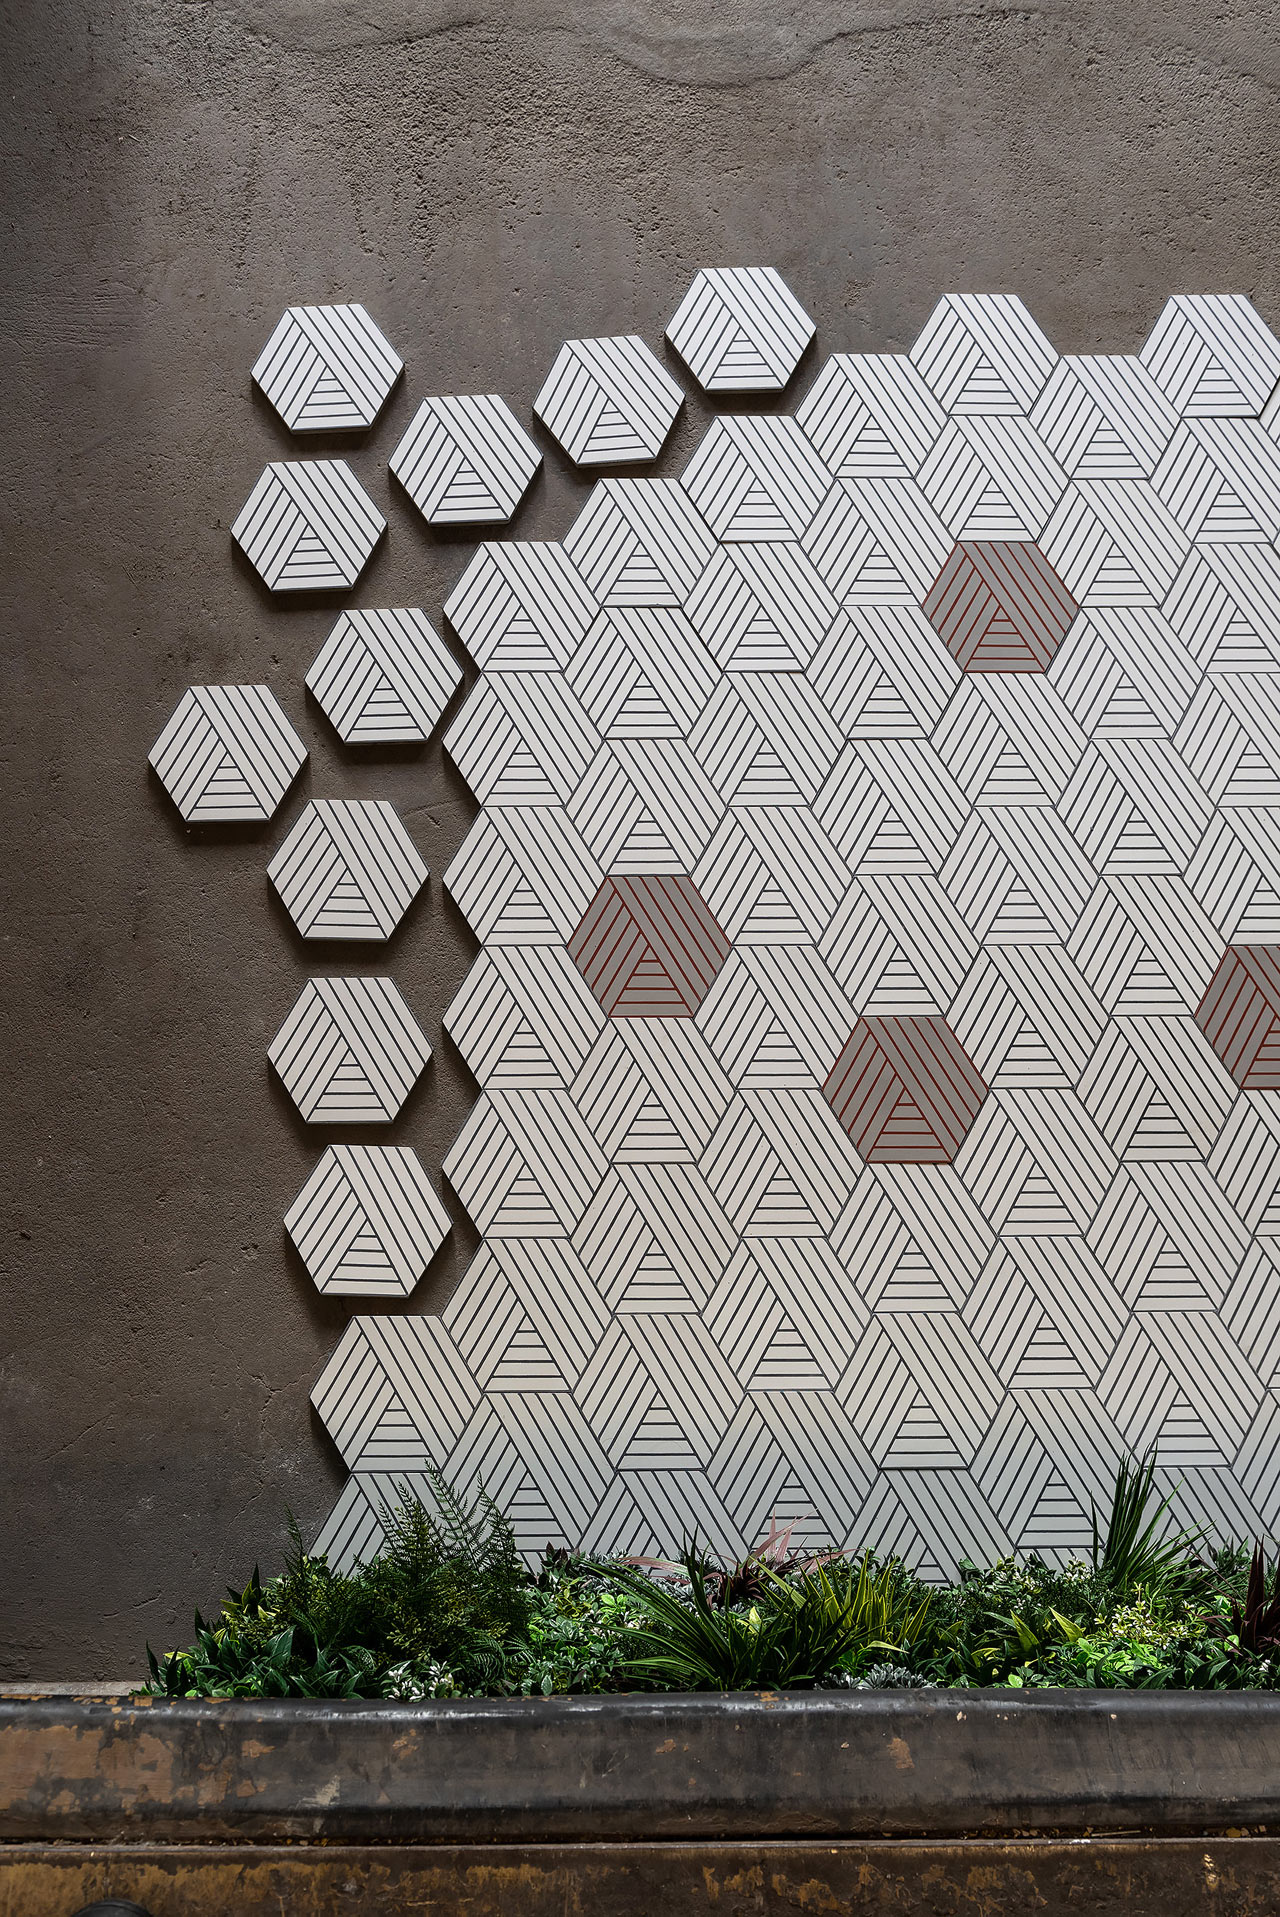 Marrakech Design Collaborates with Charlotte von der Lancken on Two Tile Collections